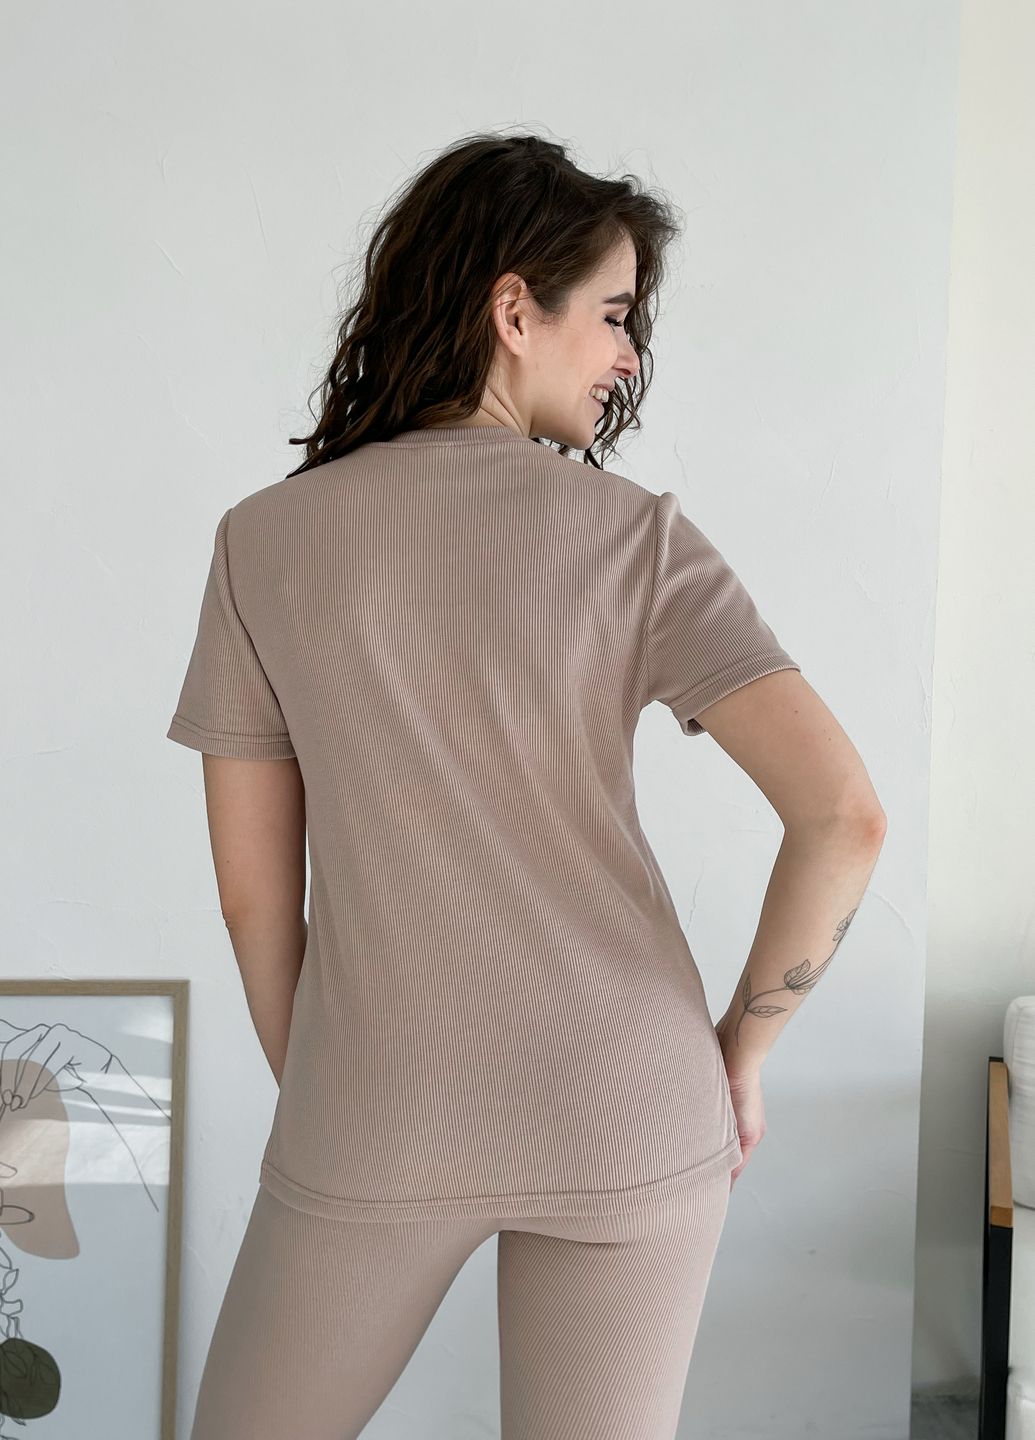 Купить Костюм женский в рубчик футболка с лосинами бежевый Merlini Сантино 100000503, размер XS-M (40-44) в интернет-магазине